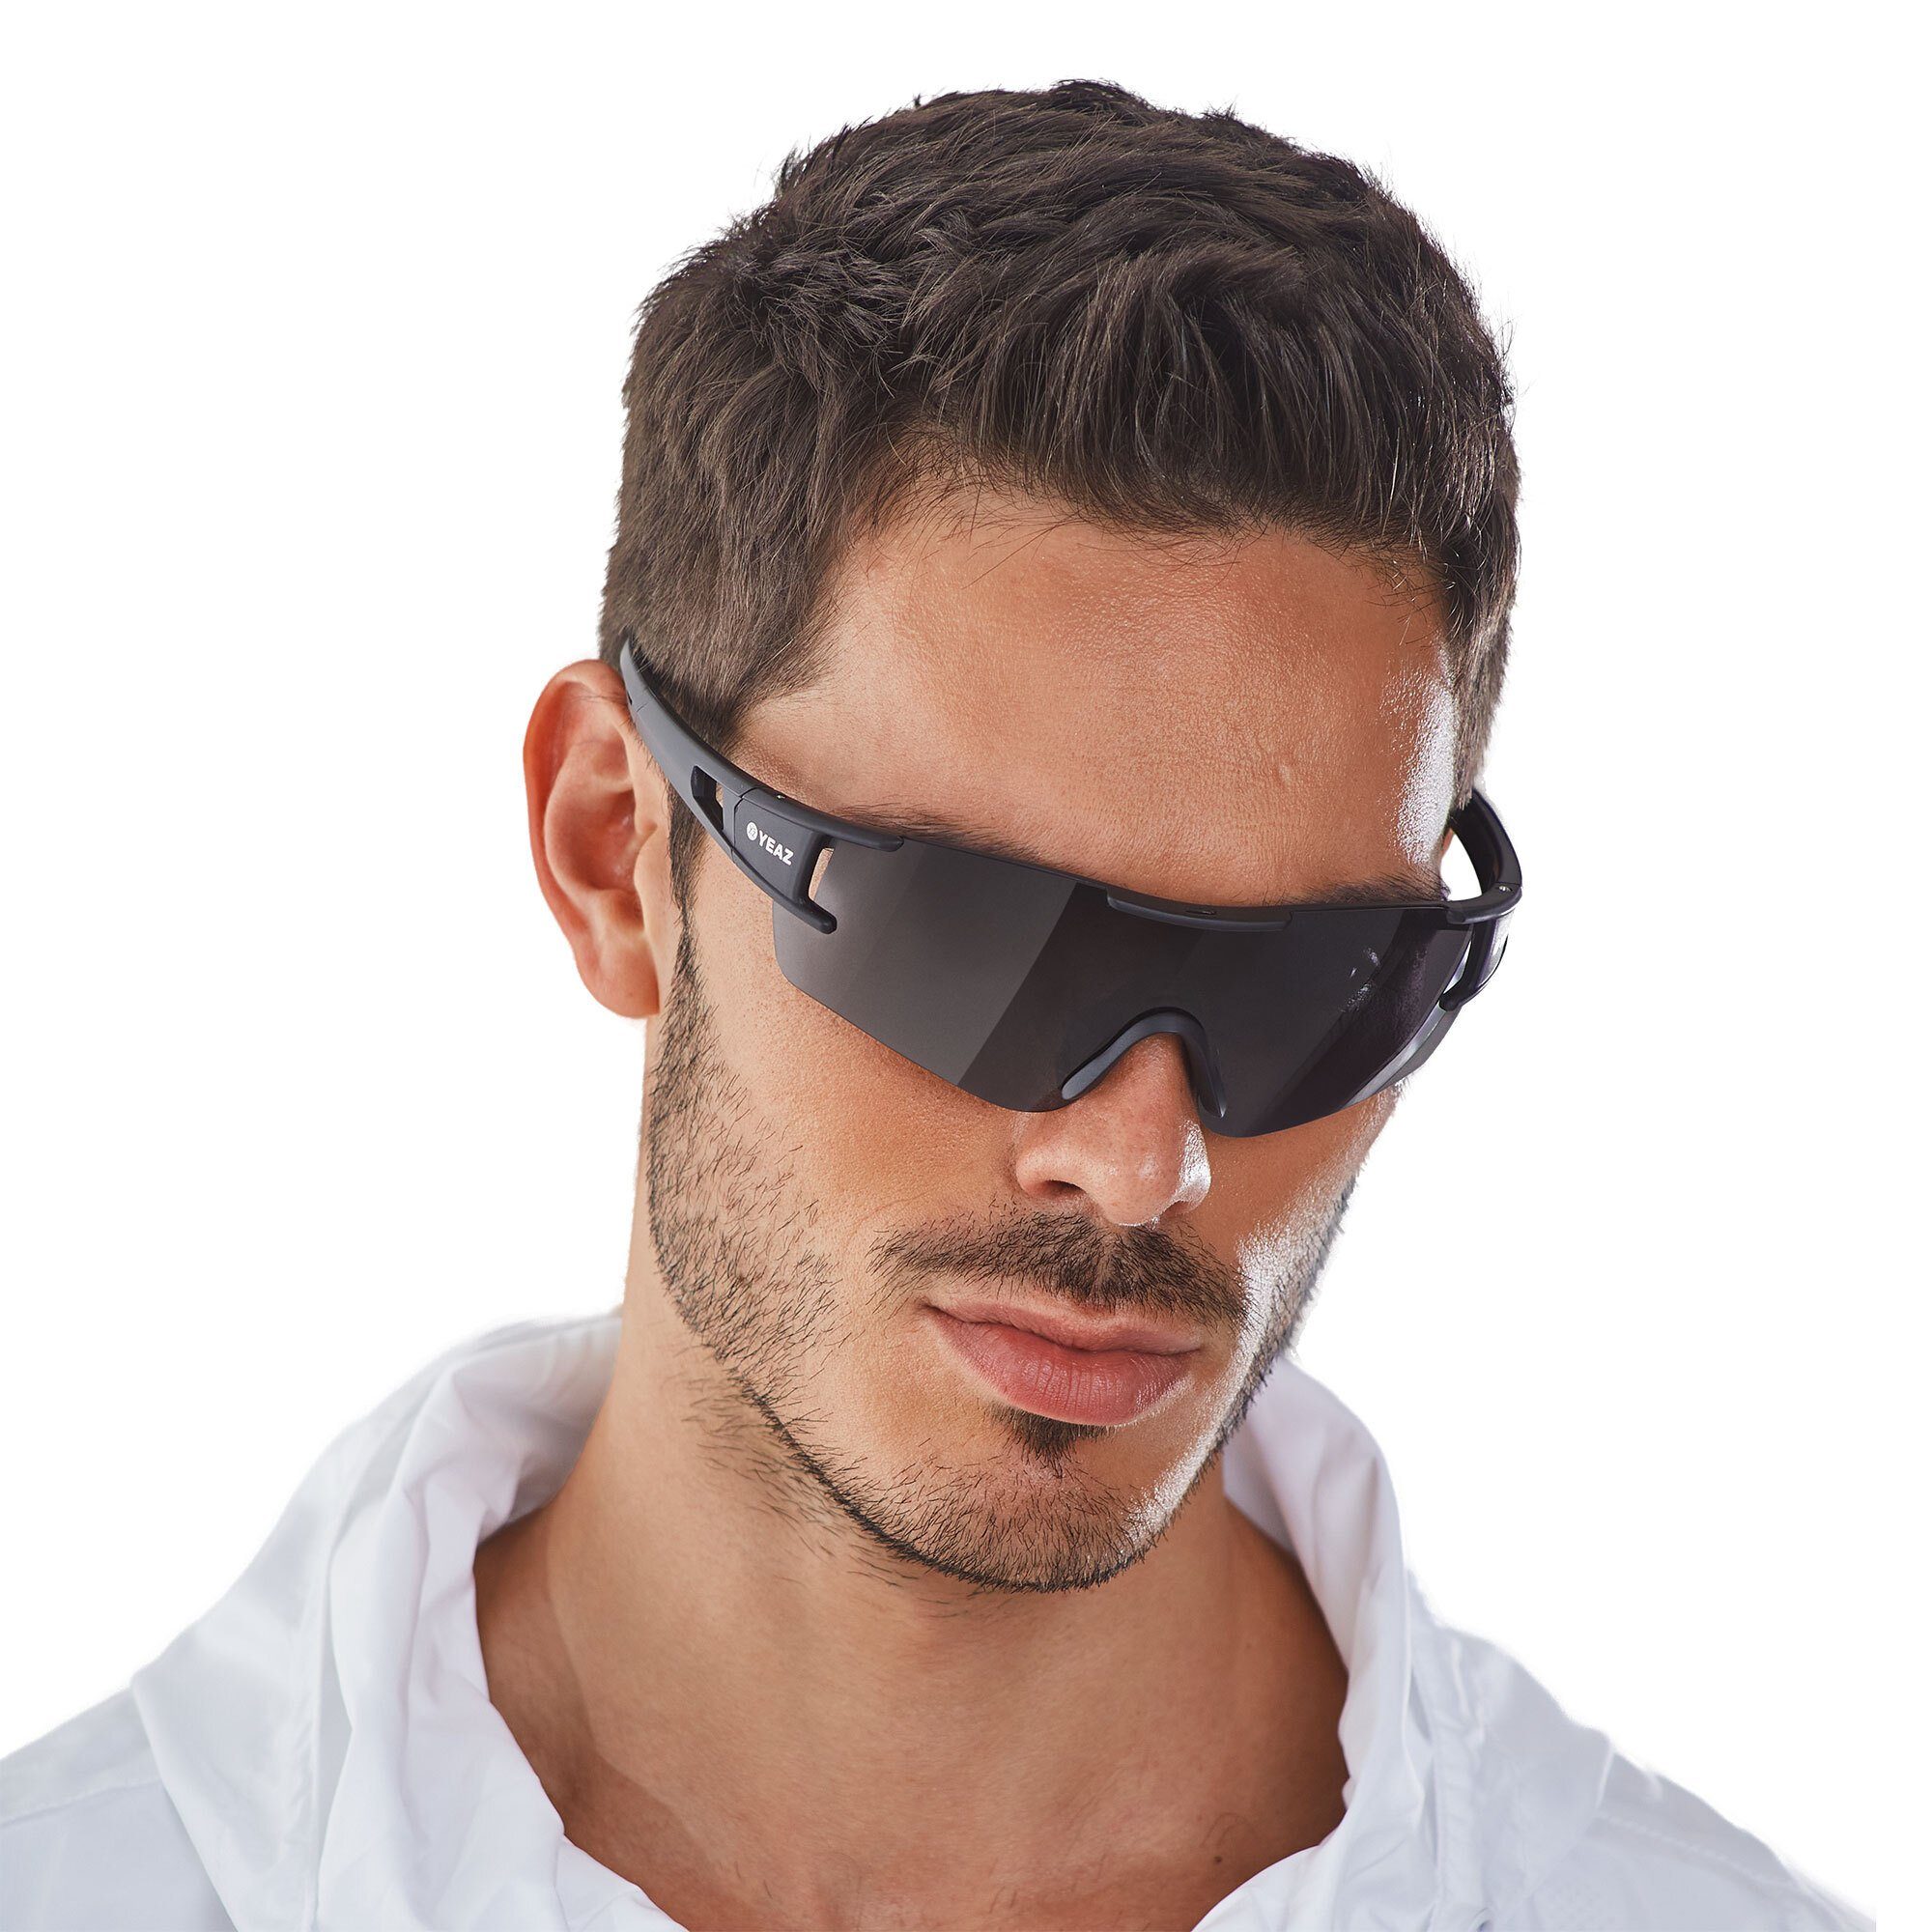 optimierter Sportbrille bei YEAZ Sicht sport-sonnenbrille black/grey, Guter Schutz SUNBLOW